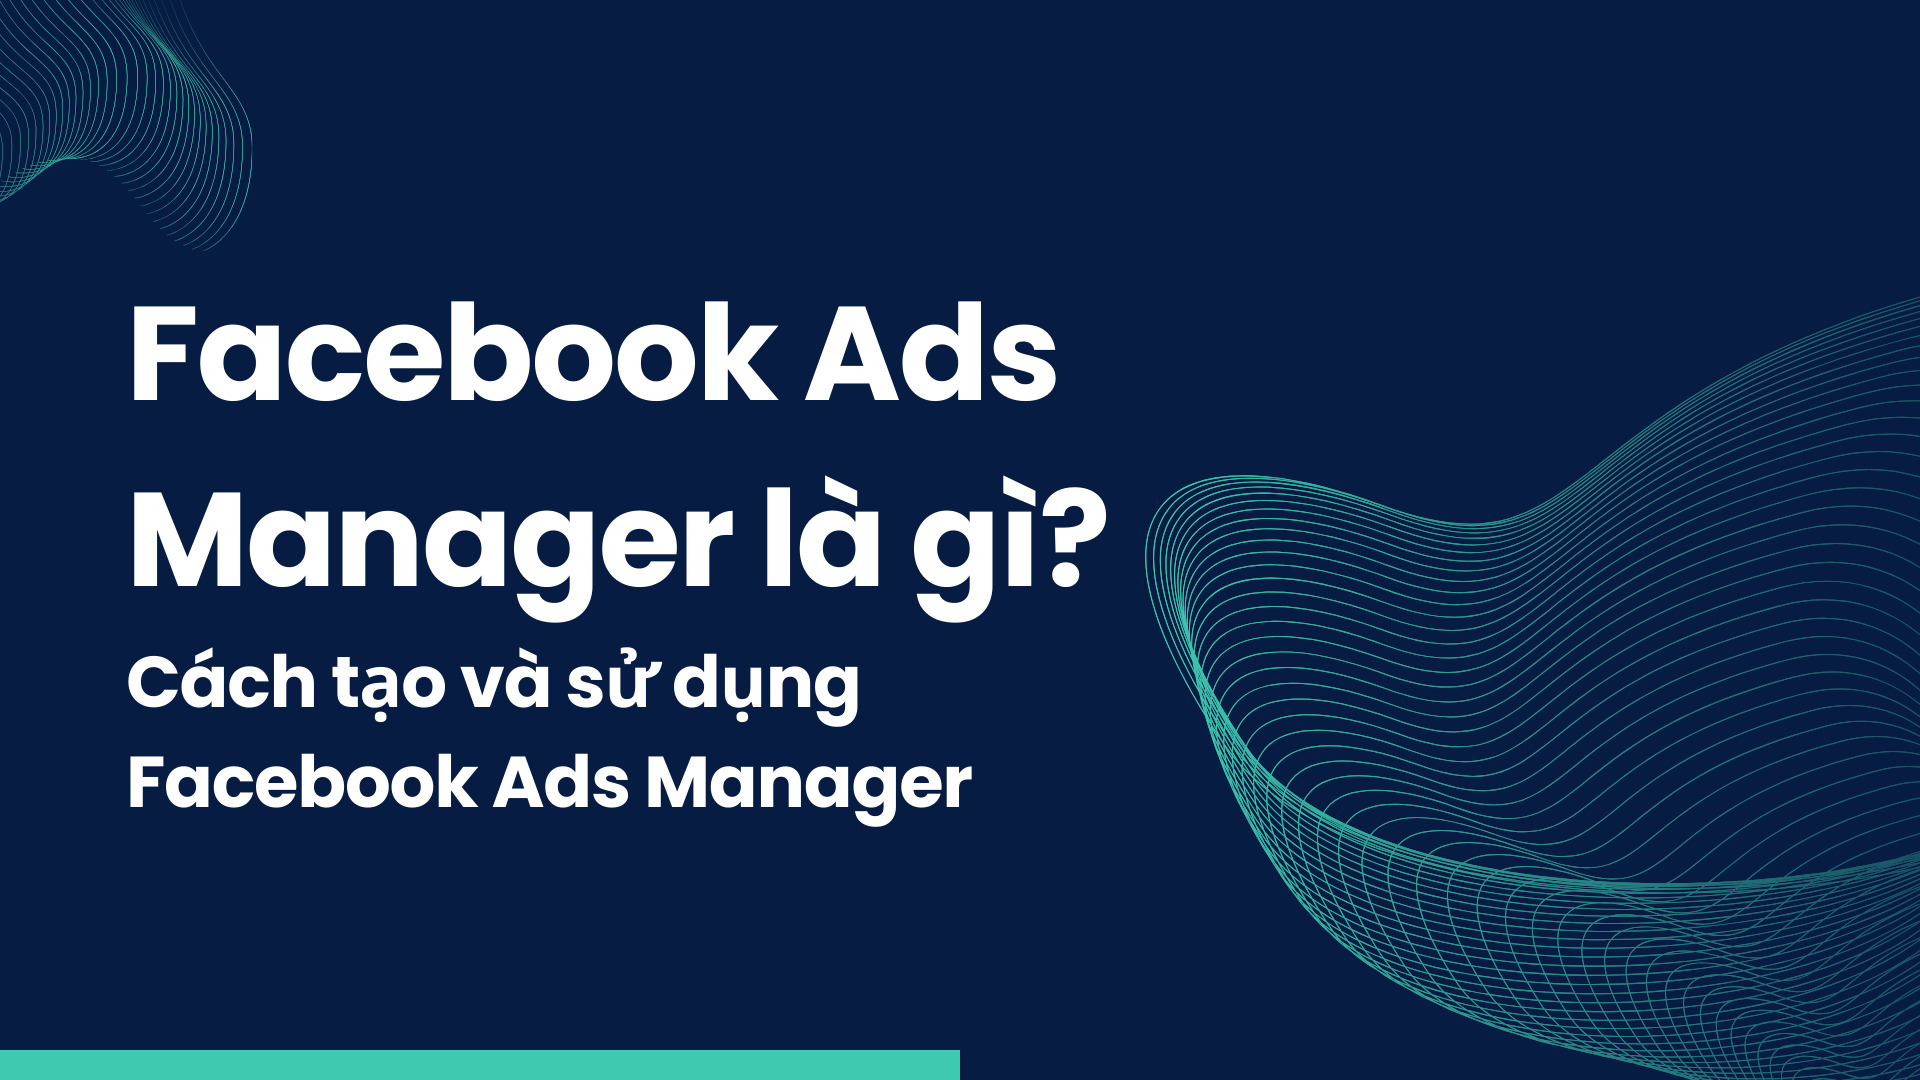 Facebook Ads Manager là gì? Cách tạo và sử dụng Facebook Ads Manager